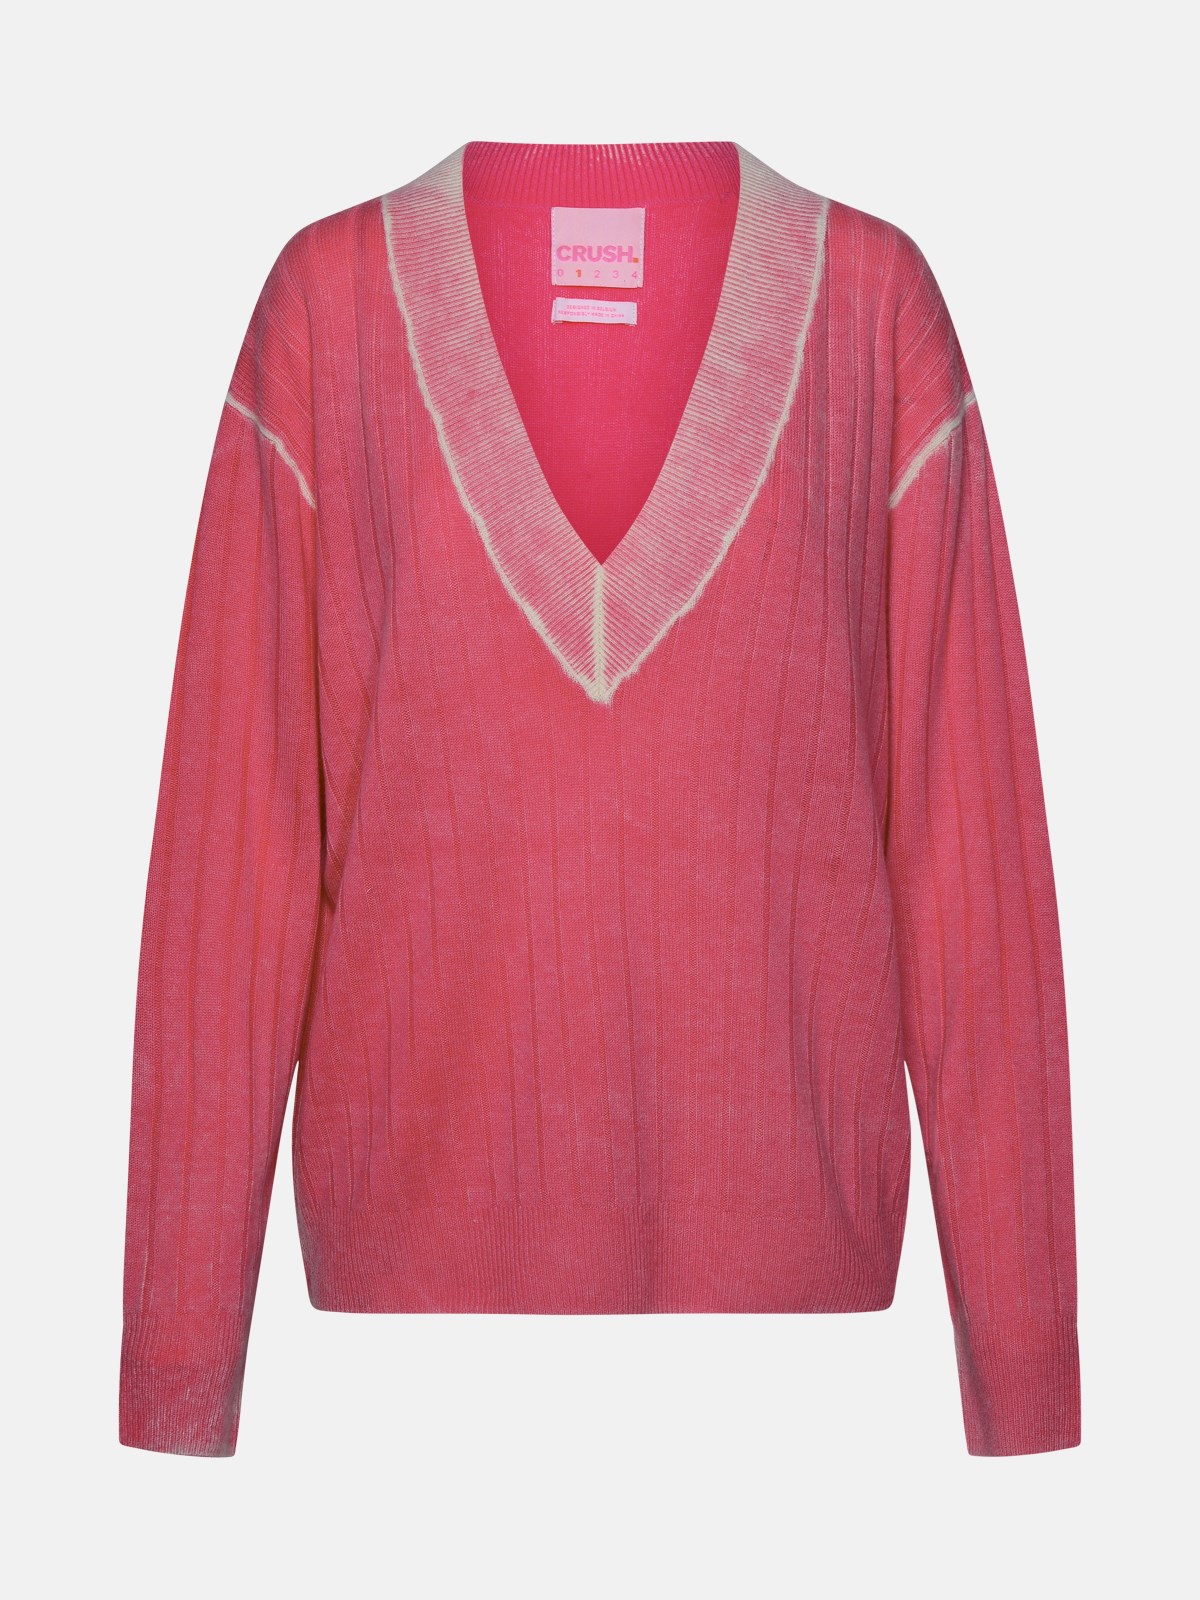 Crush Pink Cashmere Sweater In Fuchsia